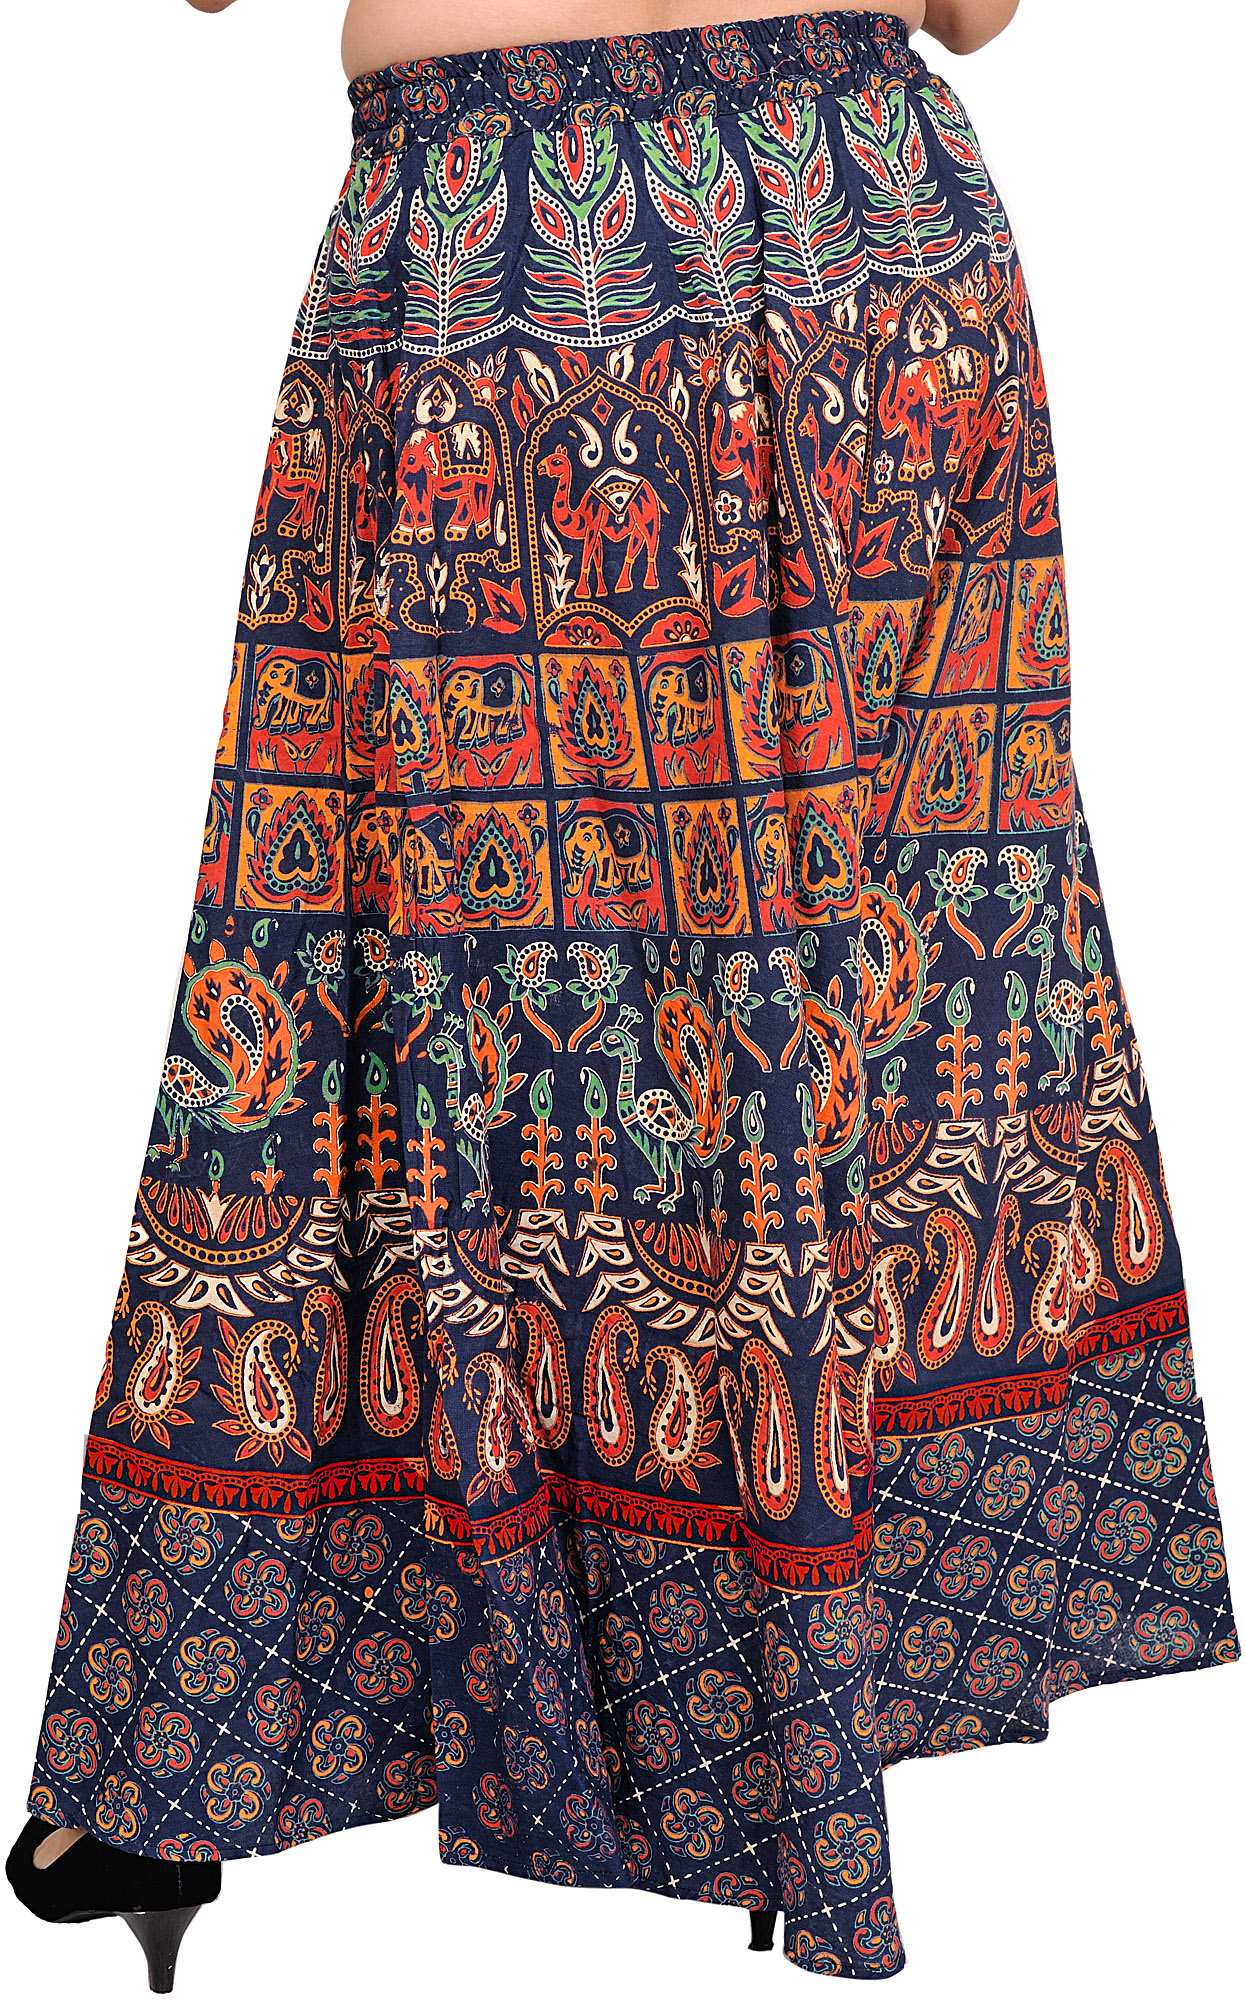 Sanganeri Long Skirt with Printed Elephants and Peacocks